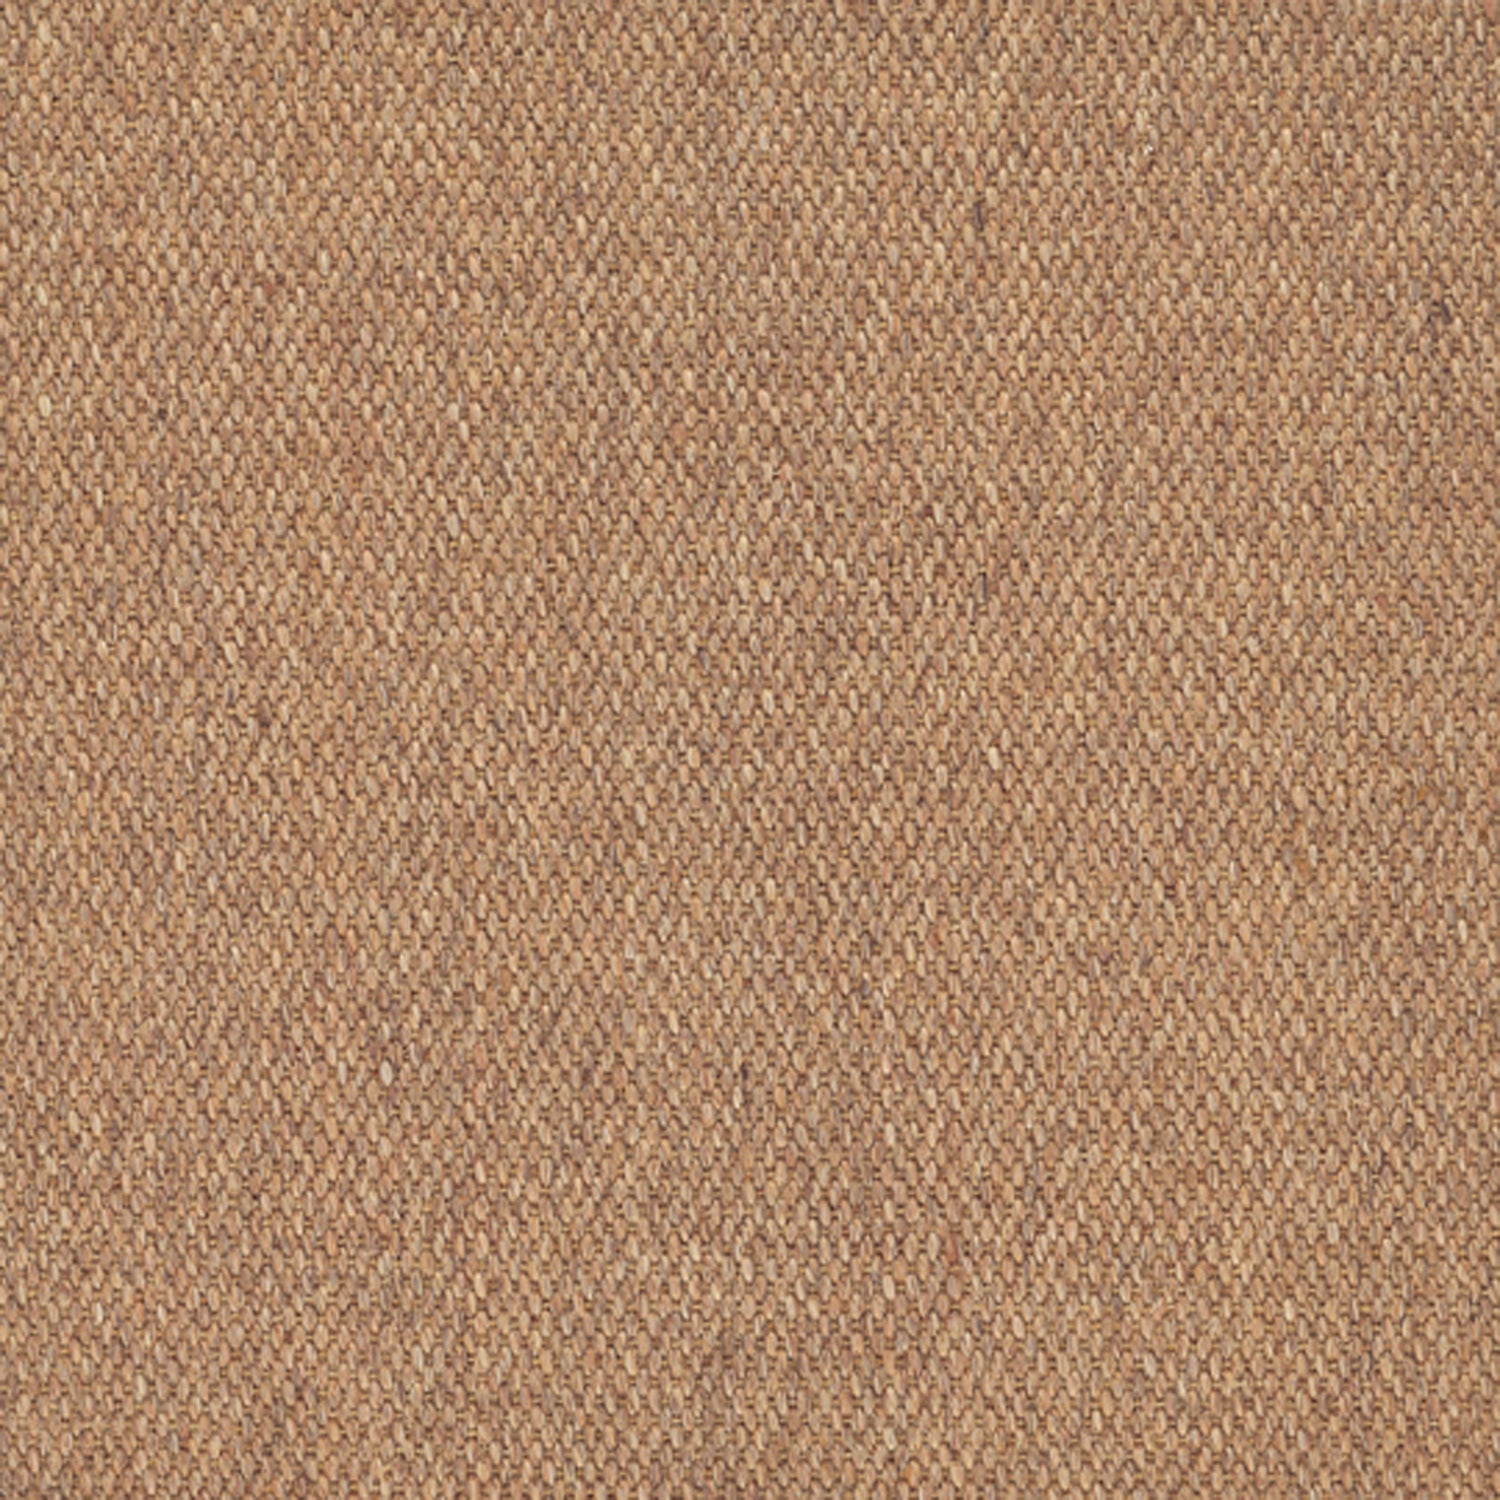 Sisal broadloom carpet swatch in a flat weave in beige.